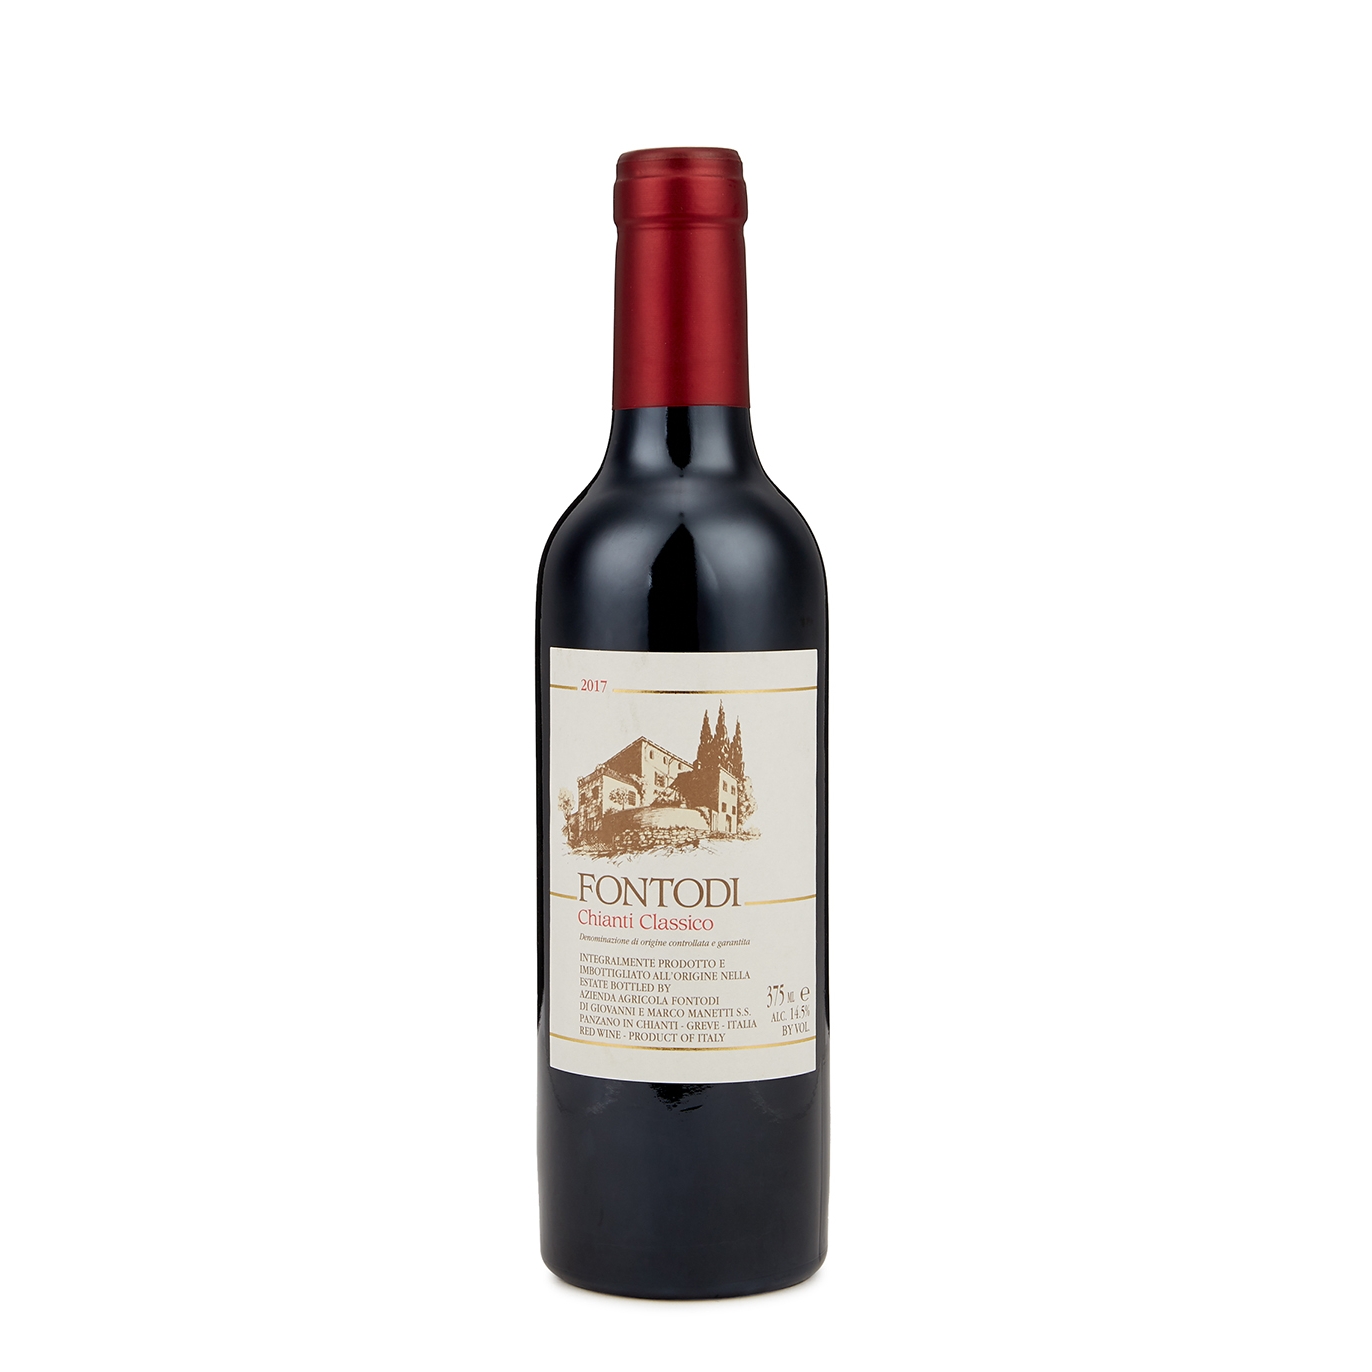 Fontodi Chianti Classico 2017 Half Bottle 375ml Red Wine